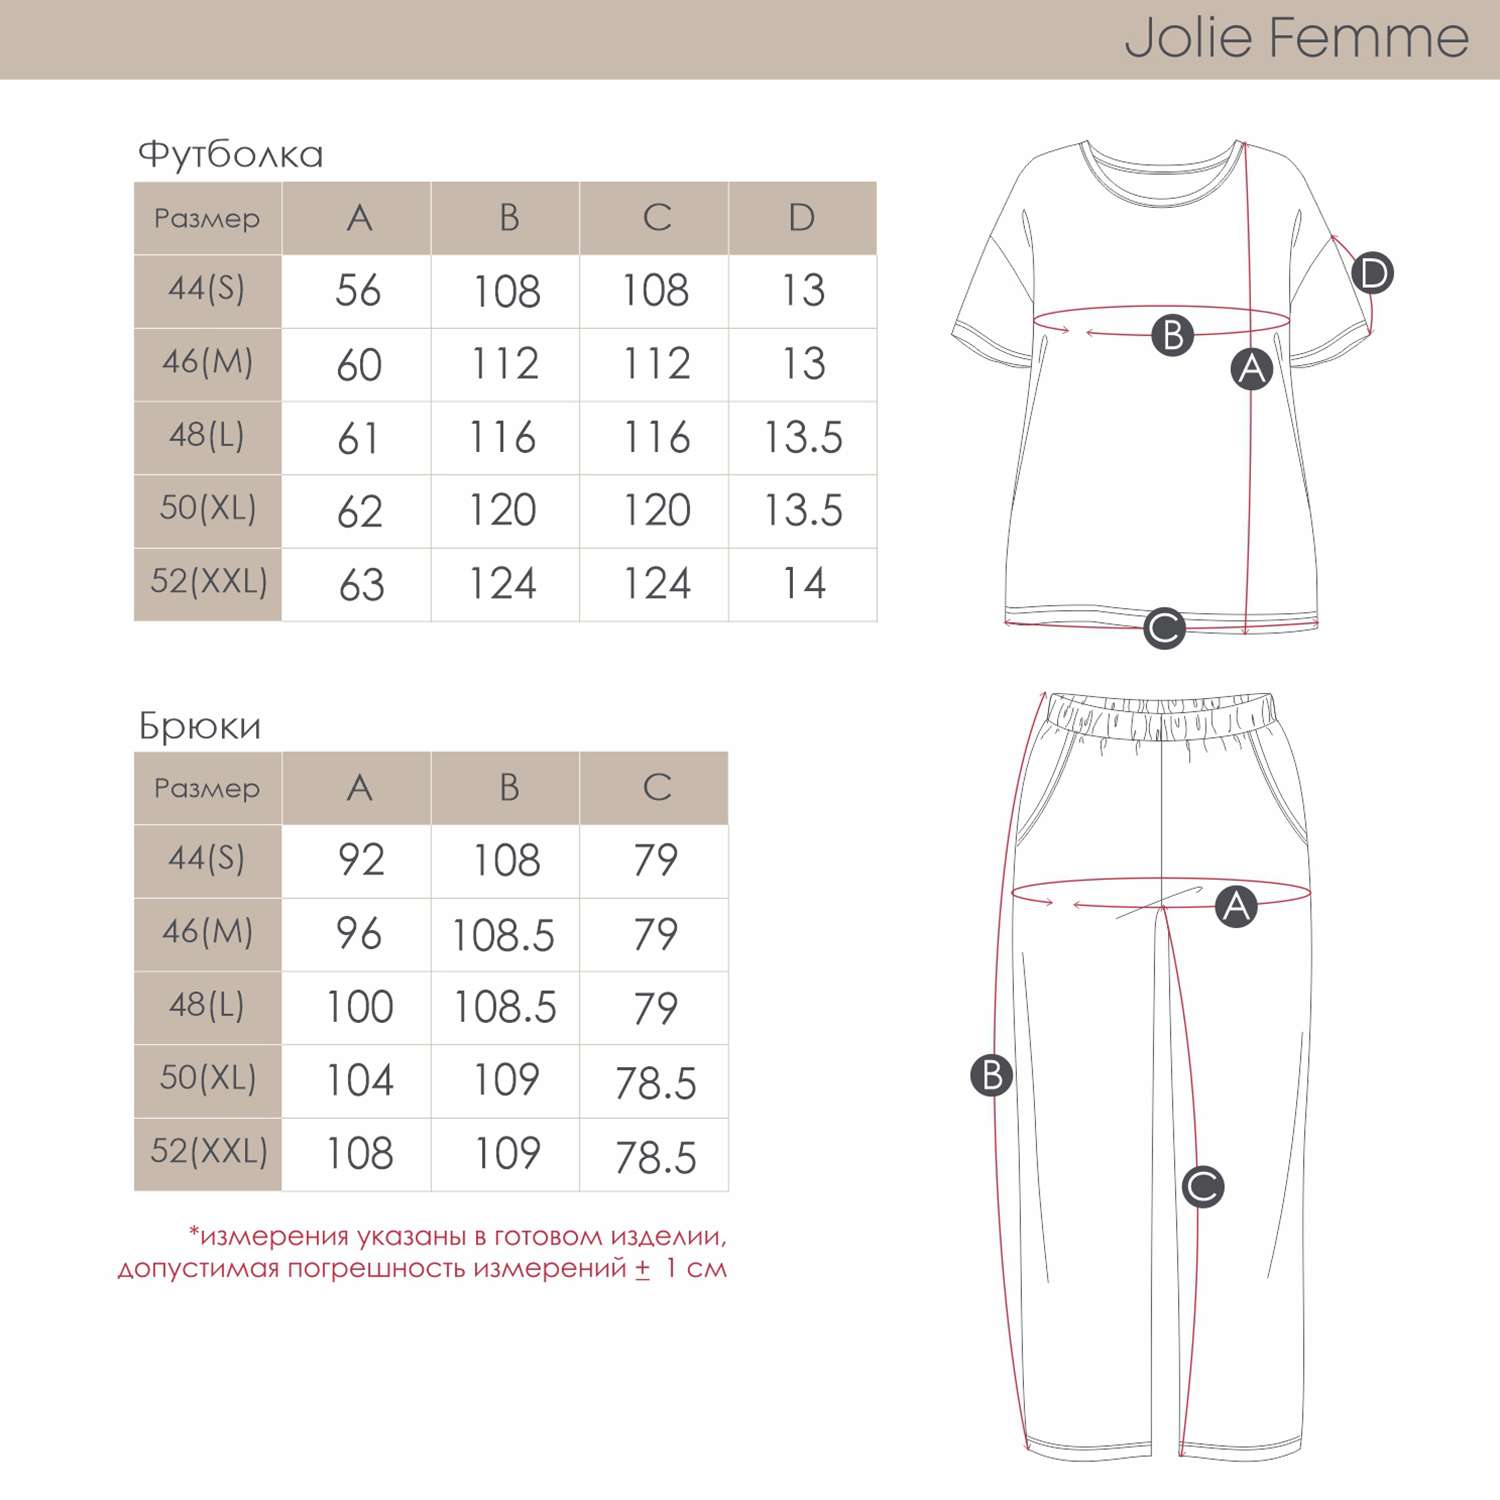 Пижама Jolie Femme J067/036/ба - фото 4